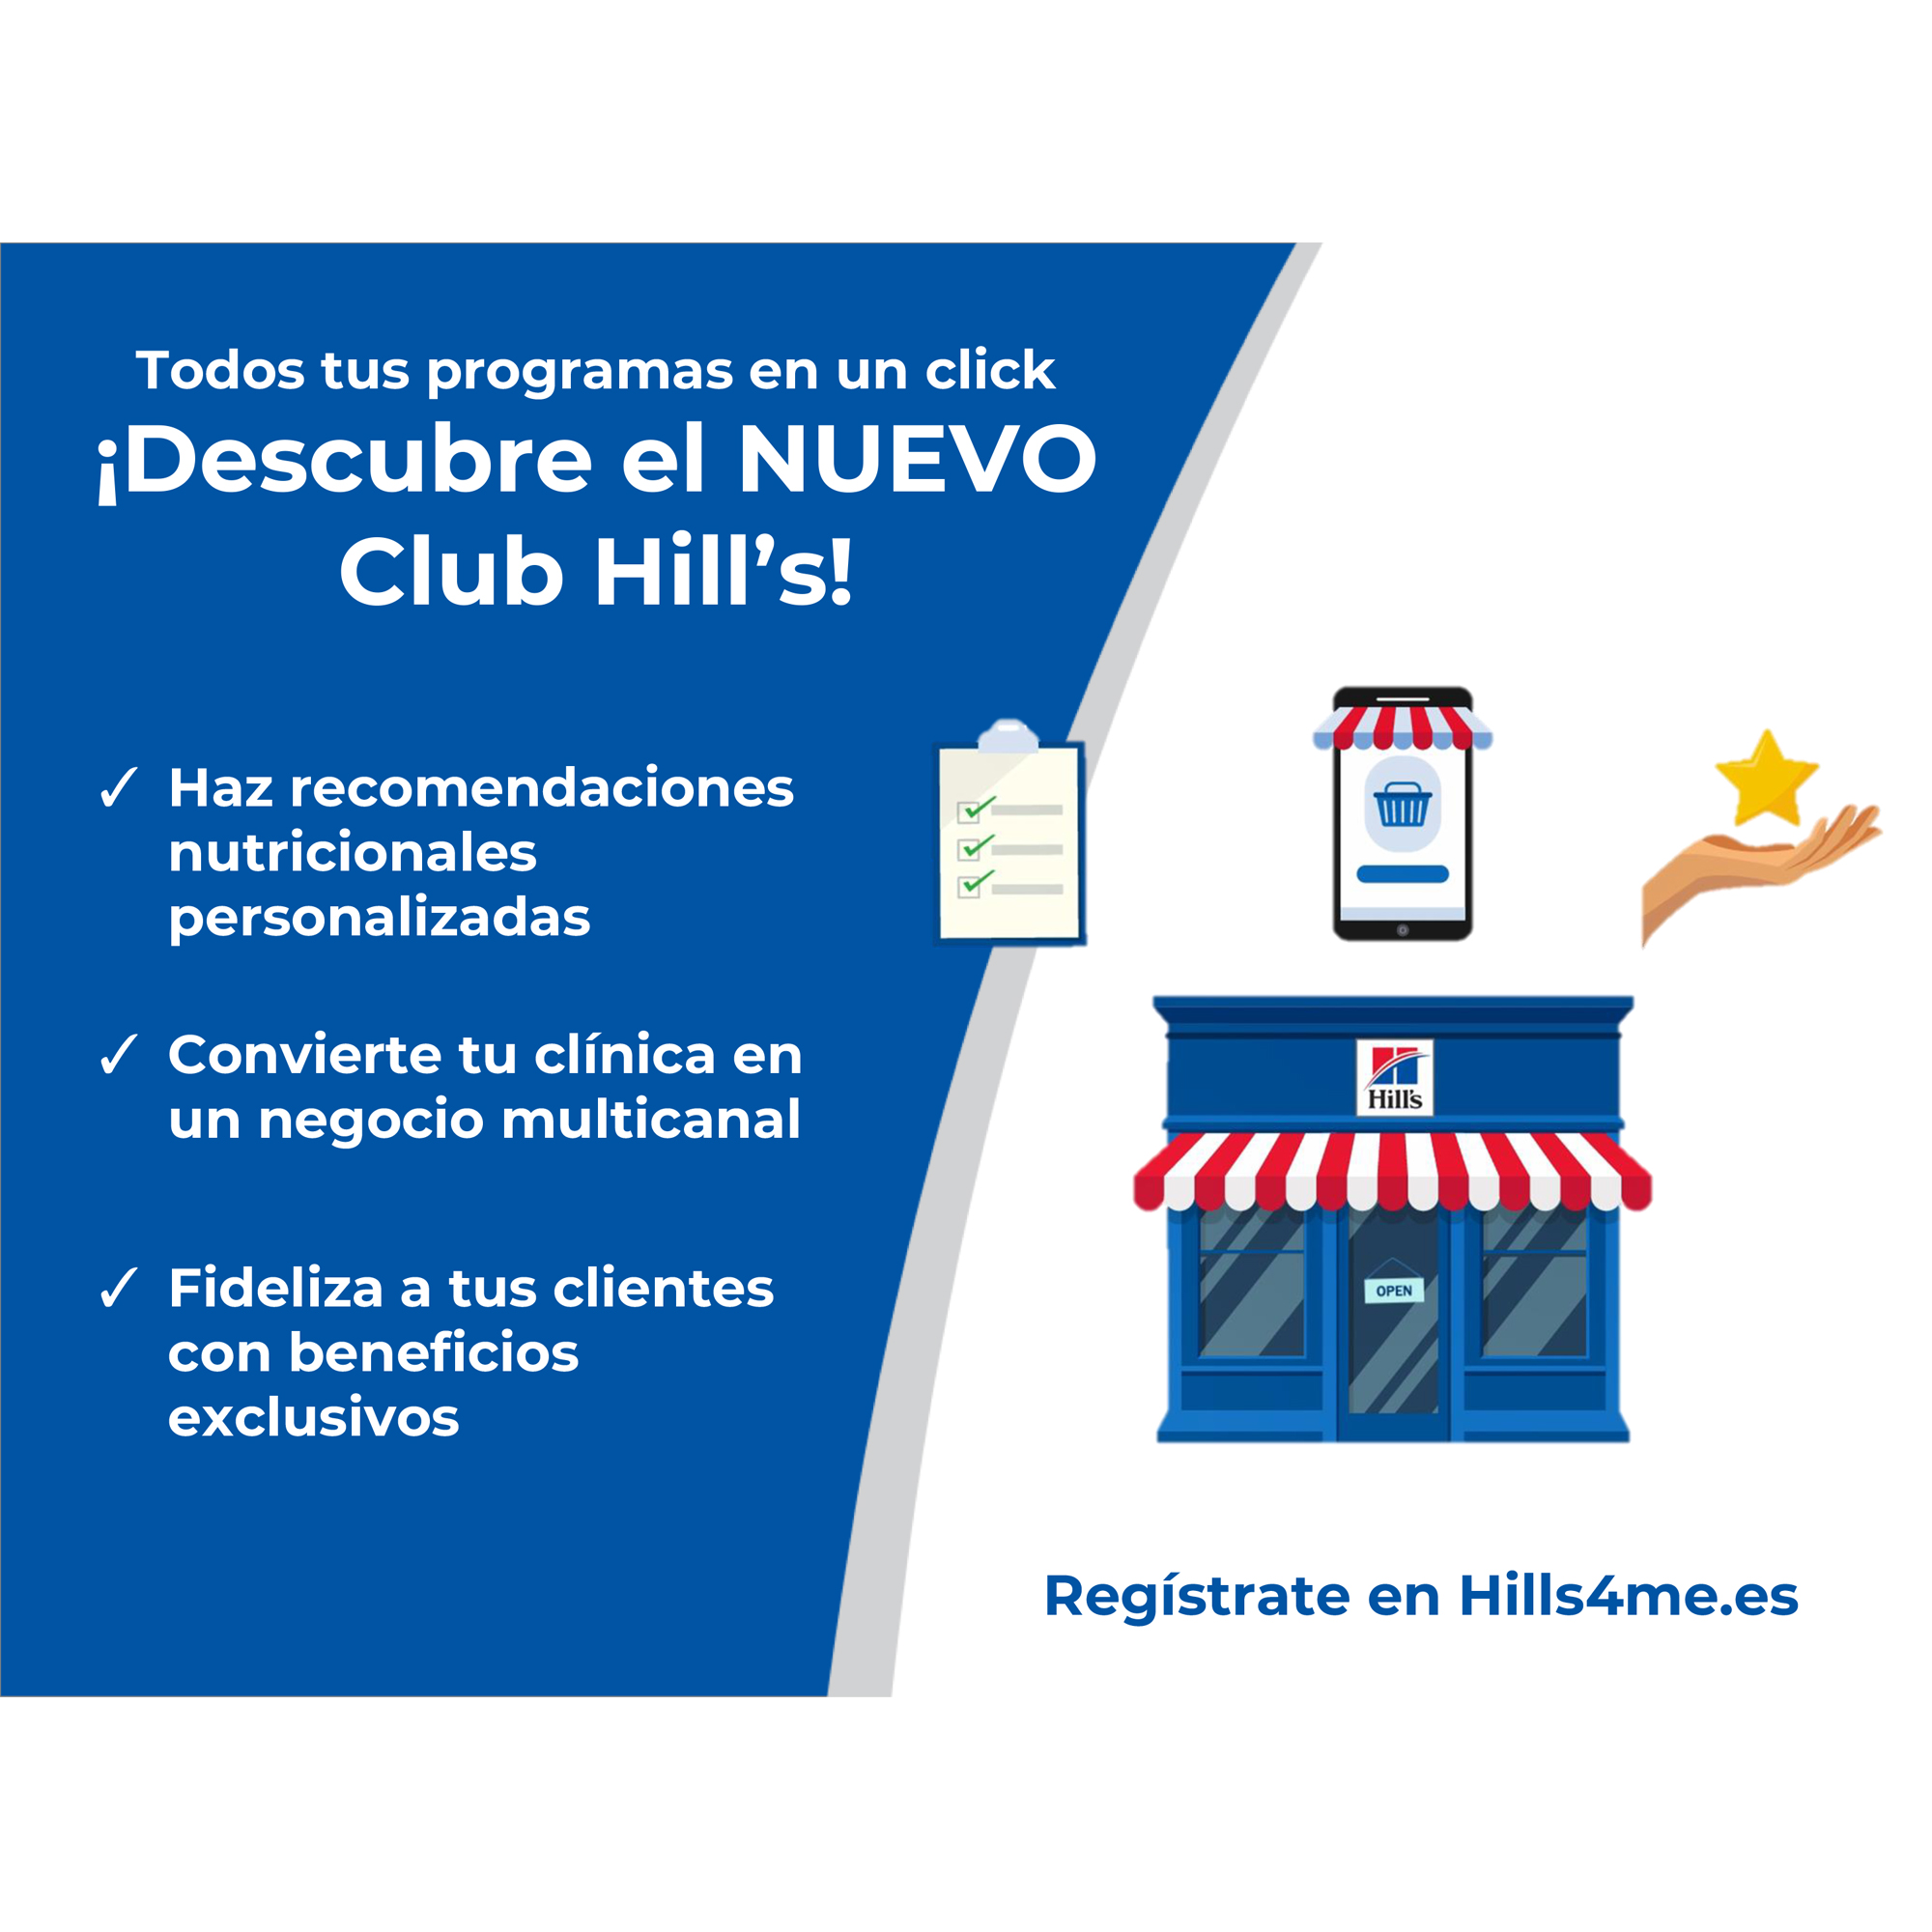 ¡Descubre el NUEVO Club Hill’s!